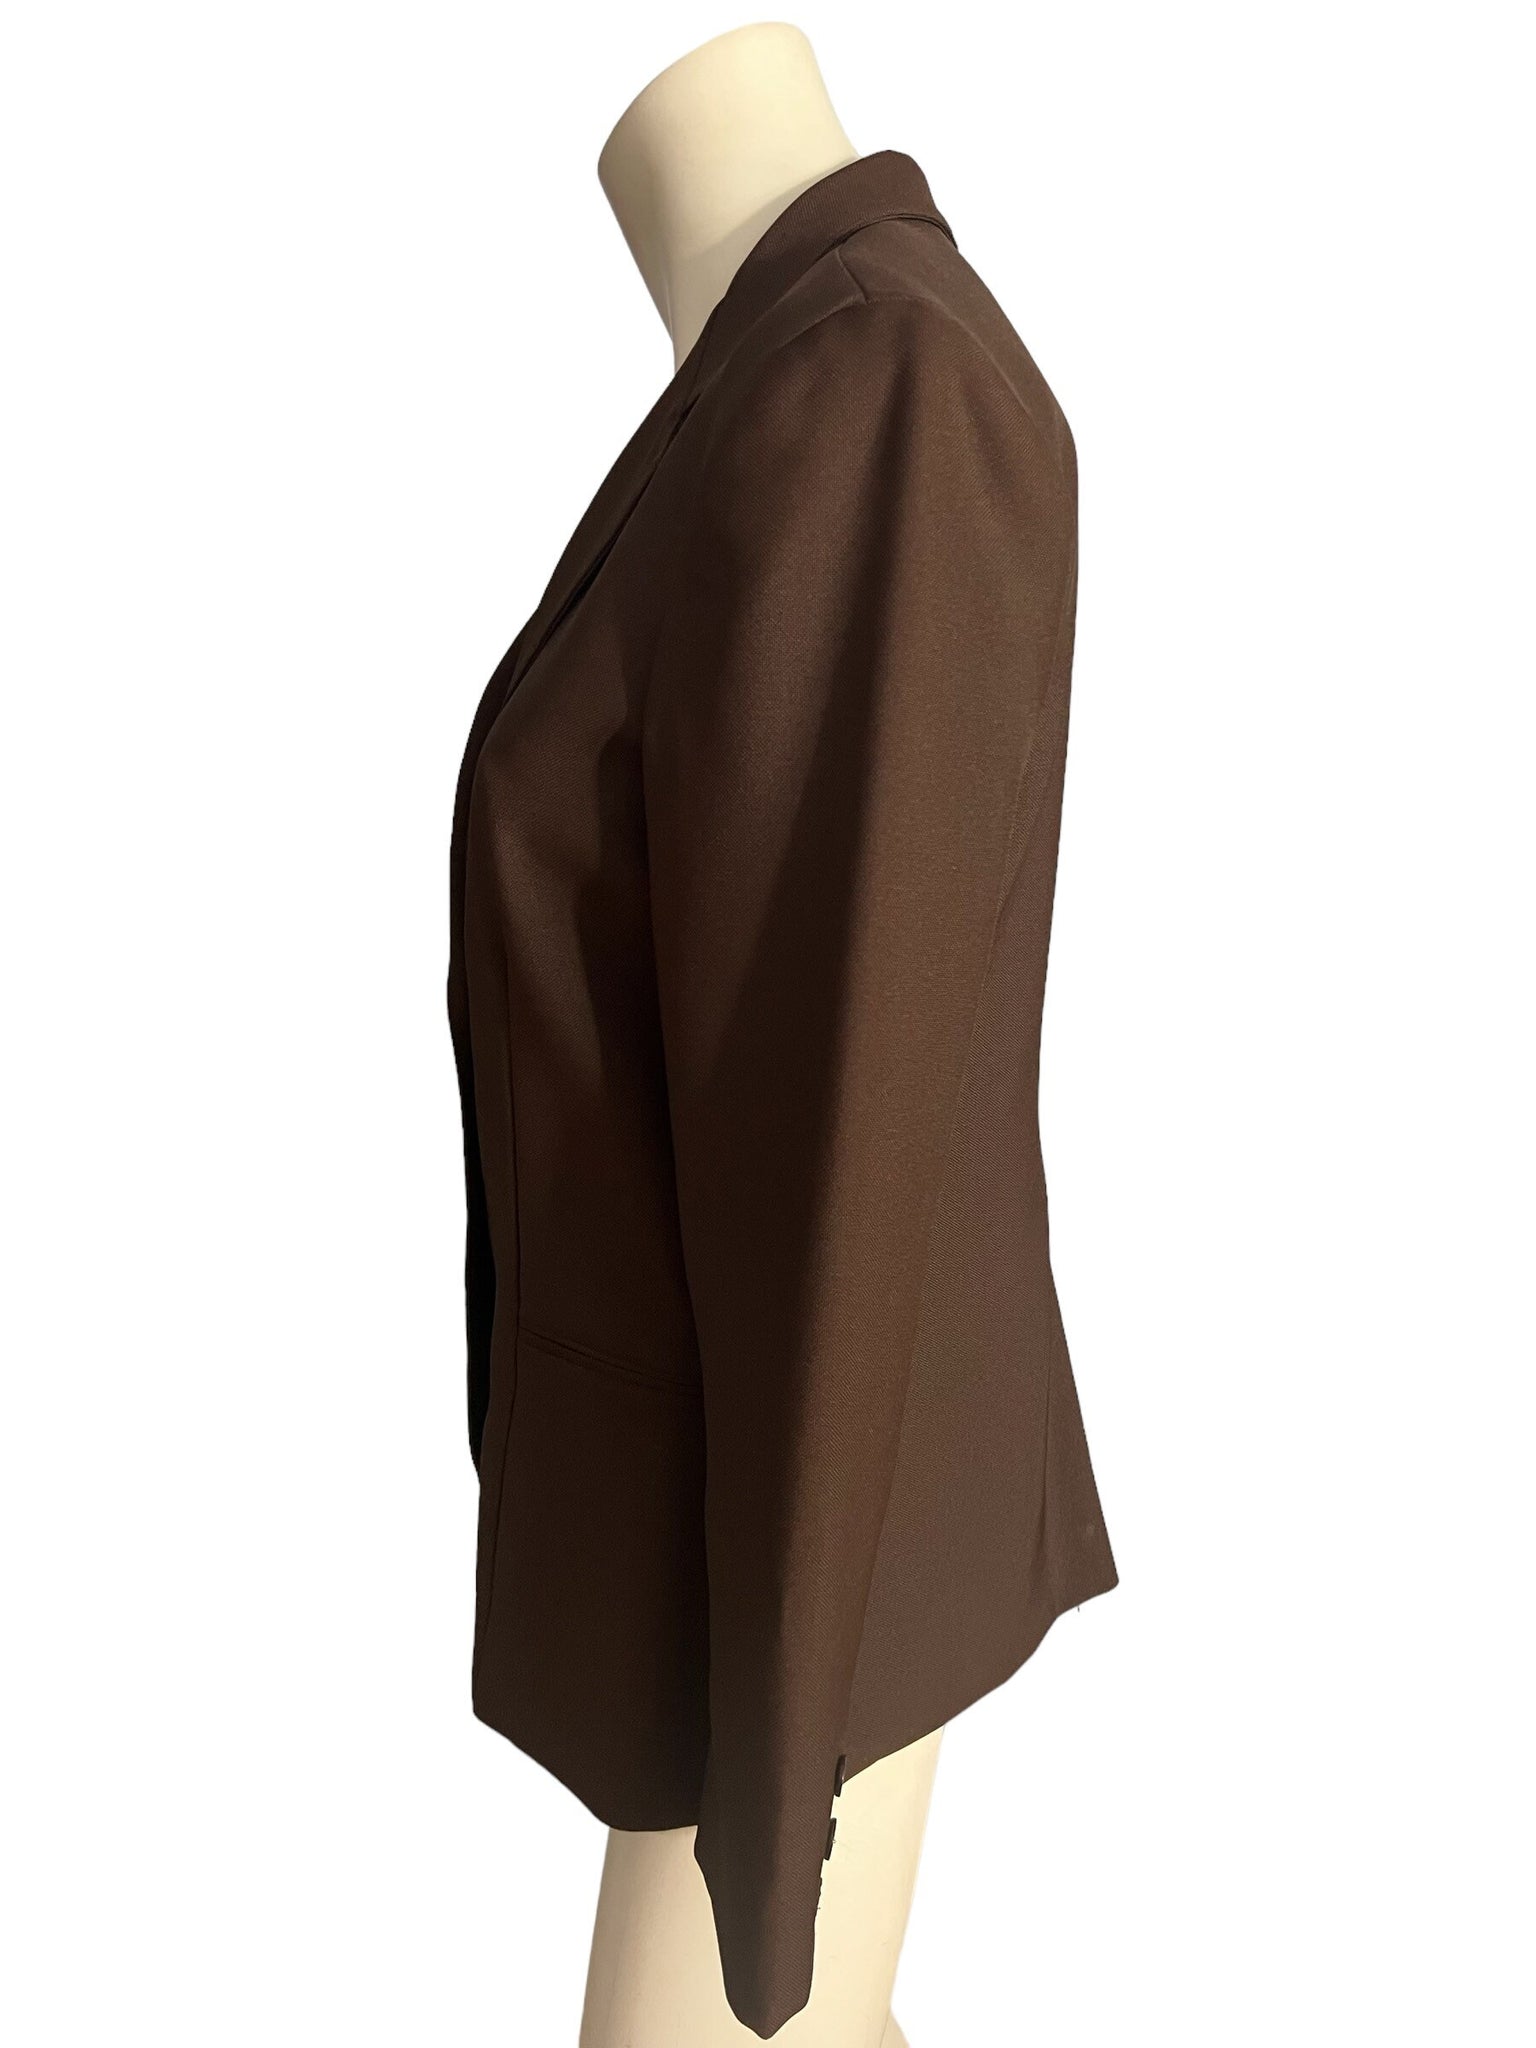 Vintage 70's brown suit Dimension M L